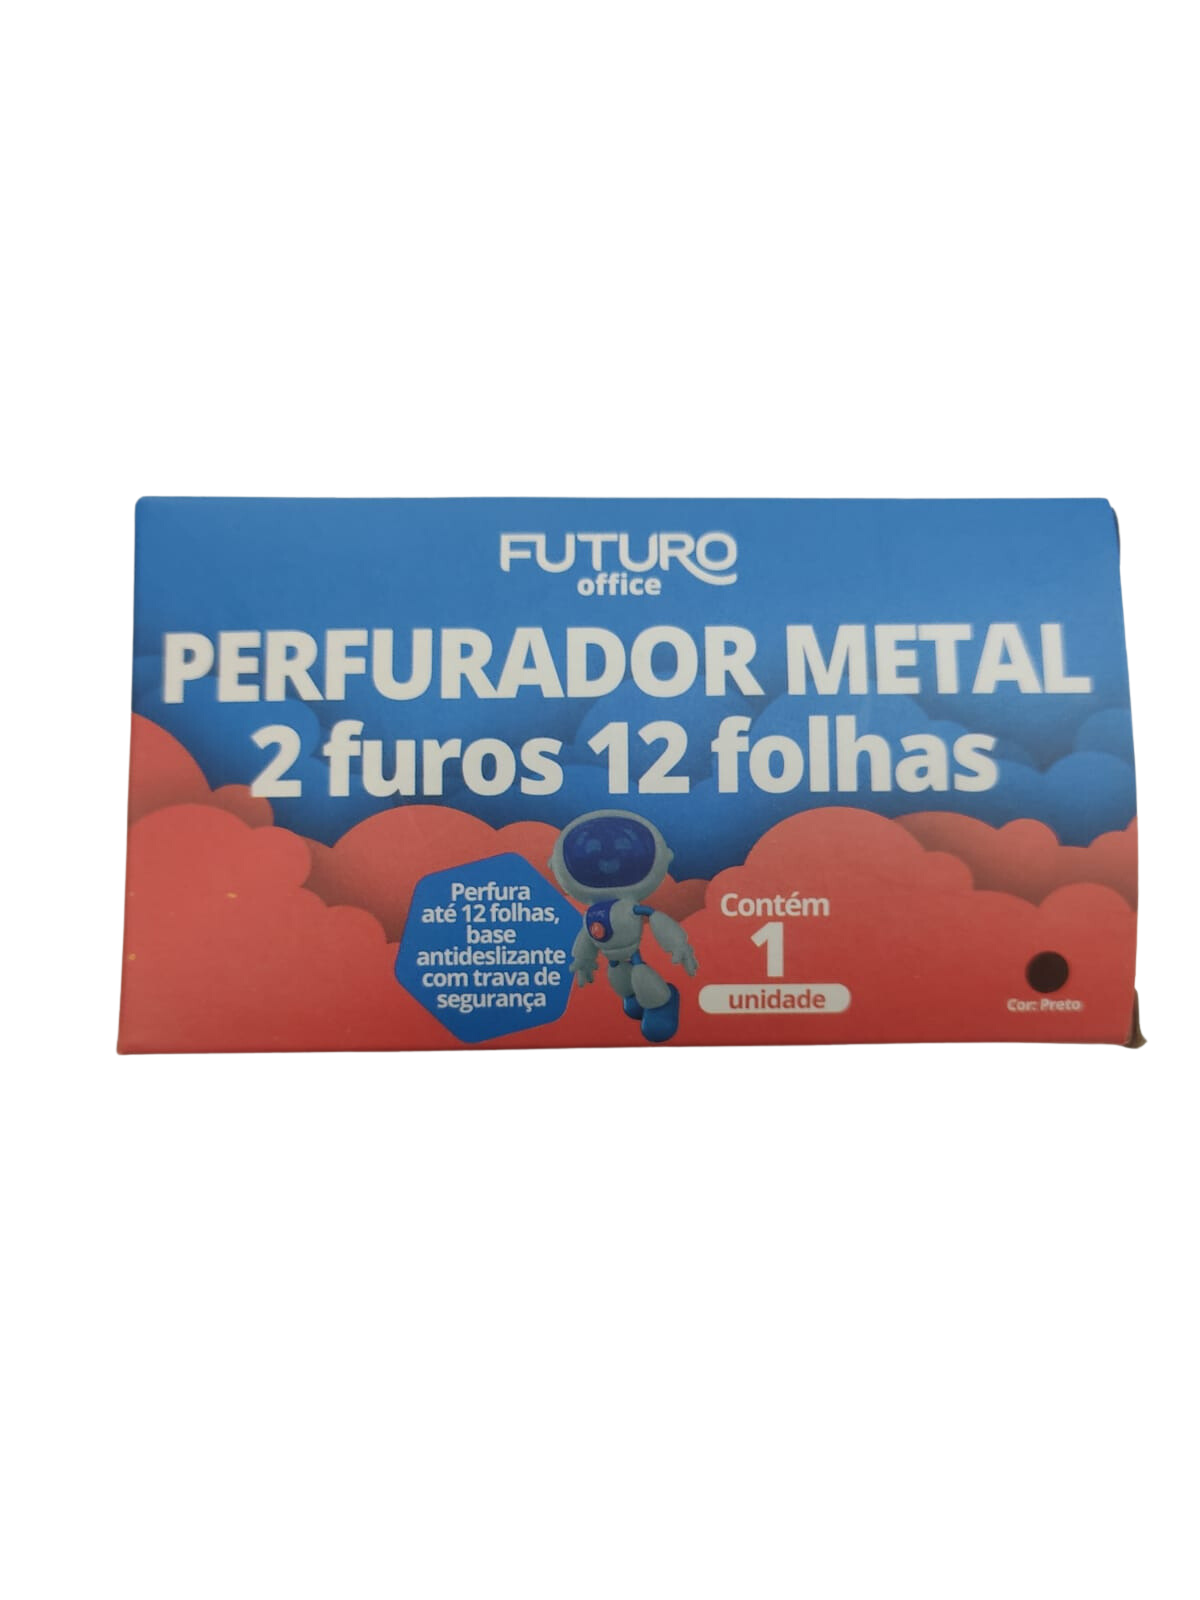 Perfurador de Folha em Metal com 2 Furos 12 folhas - Futuro